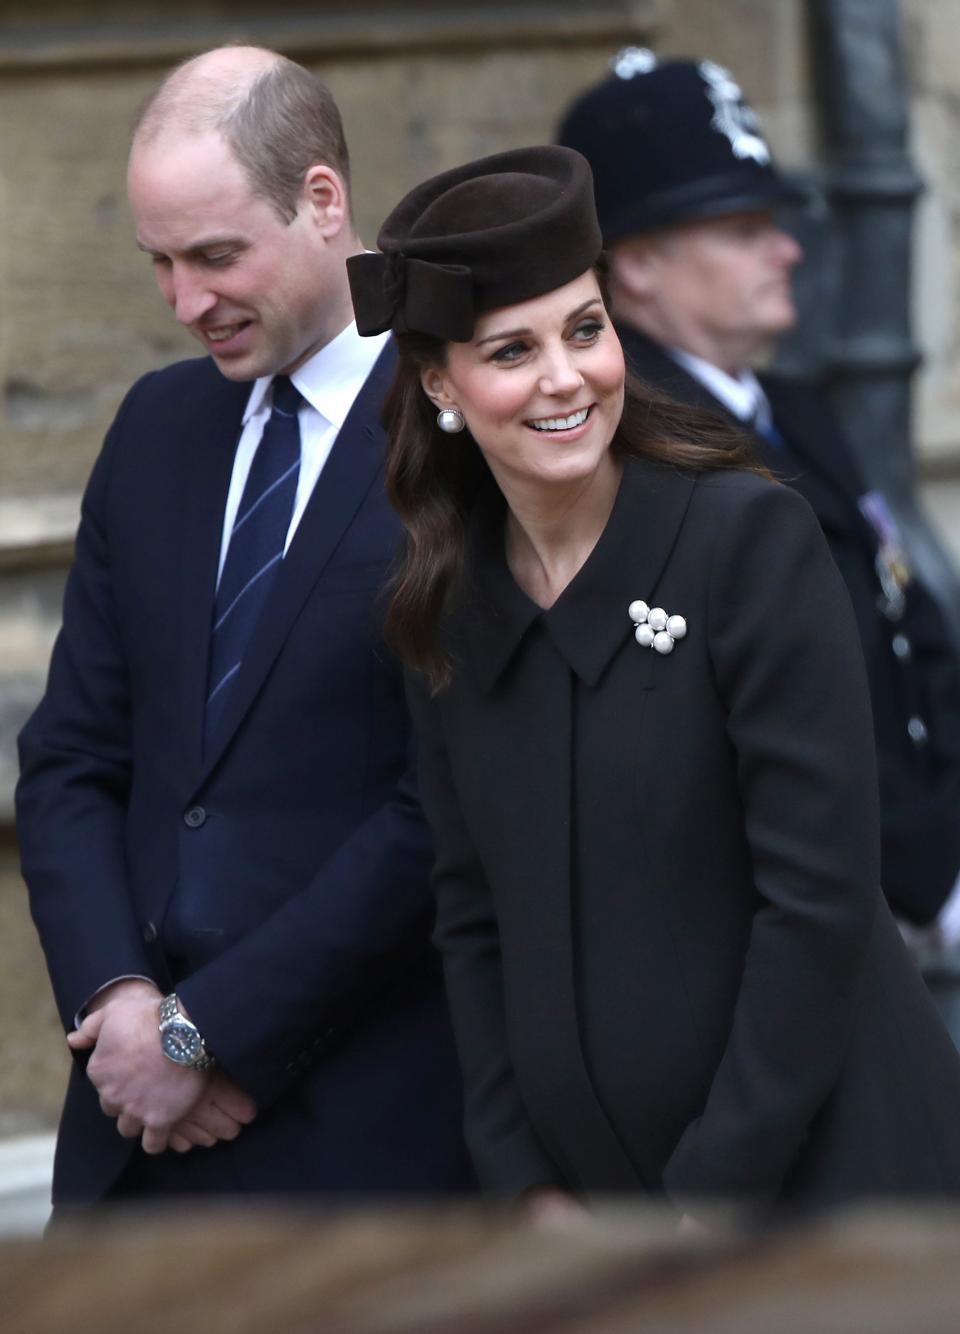 Британската кралица Елизабет Втора, принц Уилям, съпругата му Кейт Мидълтън и други членове на кралското семейство се събраха на великденска църковна служба в параклиса "Сейнт Джордж" в Уиндзор., Принц Уилям и съпругата му пристигнаха с няколко минути закъснение. Кейт е бременна с третото им дете и се очаква то да се роди през месеца., Принц Хари и годеницата му, американската актриса Меган Маркъл, не присъстваха.